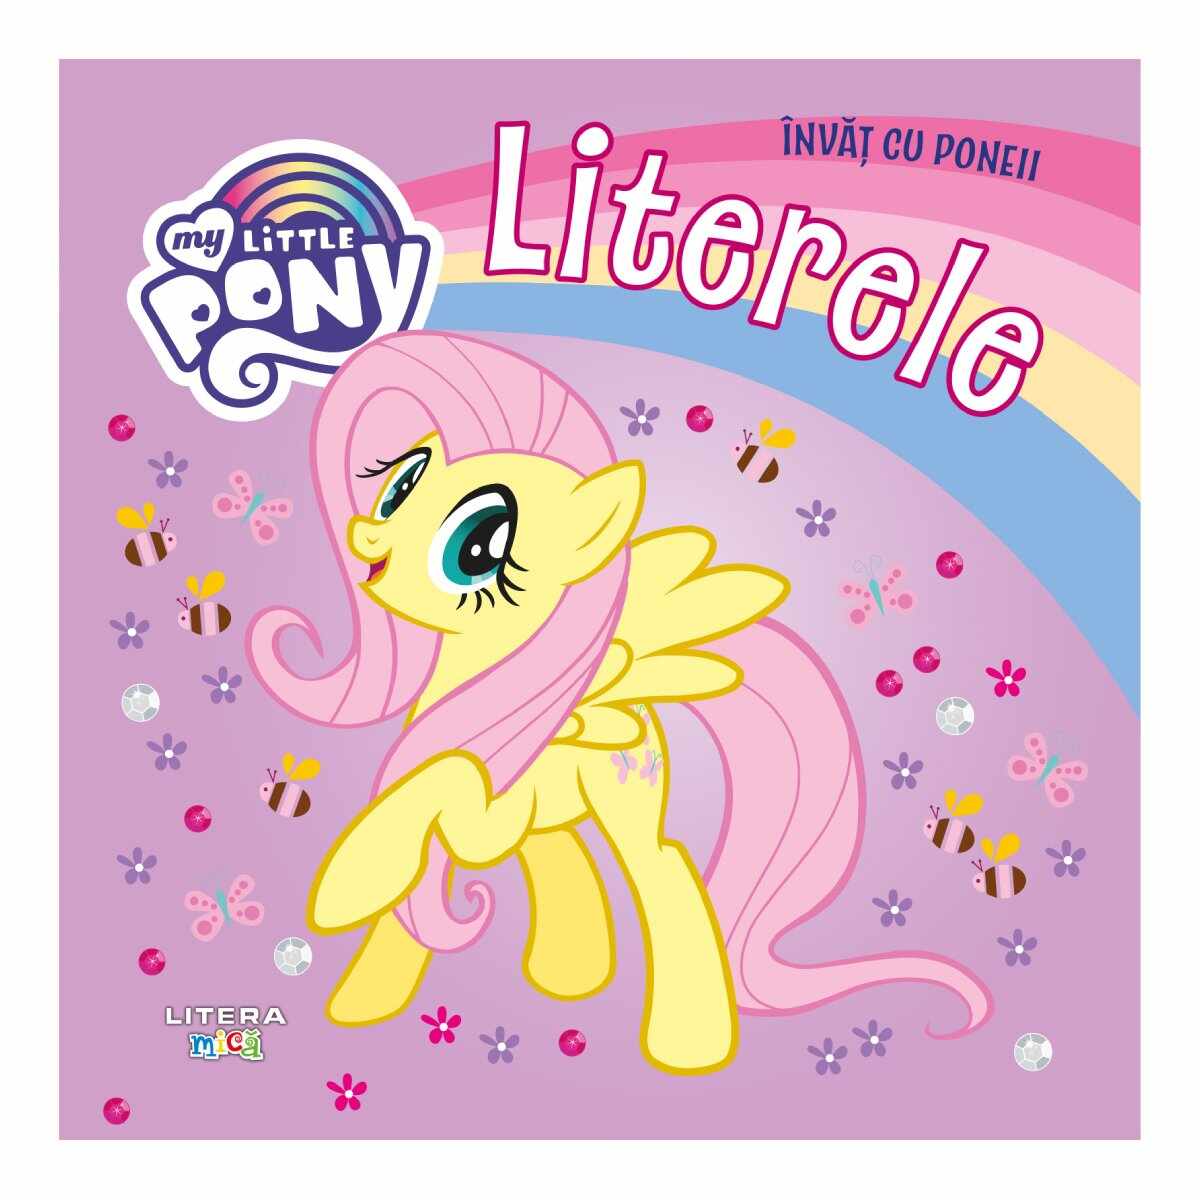 My Little Pony, Invat cu poneii, Literele, Reeditare